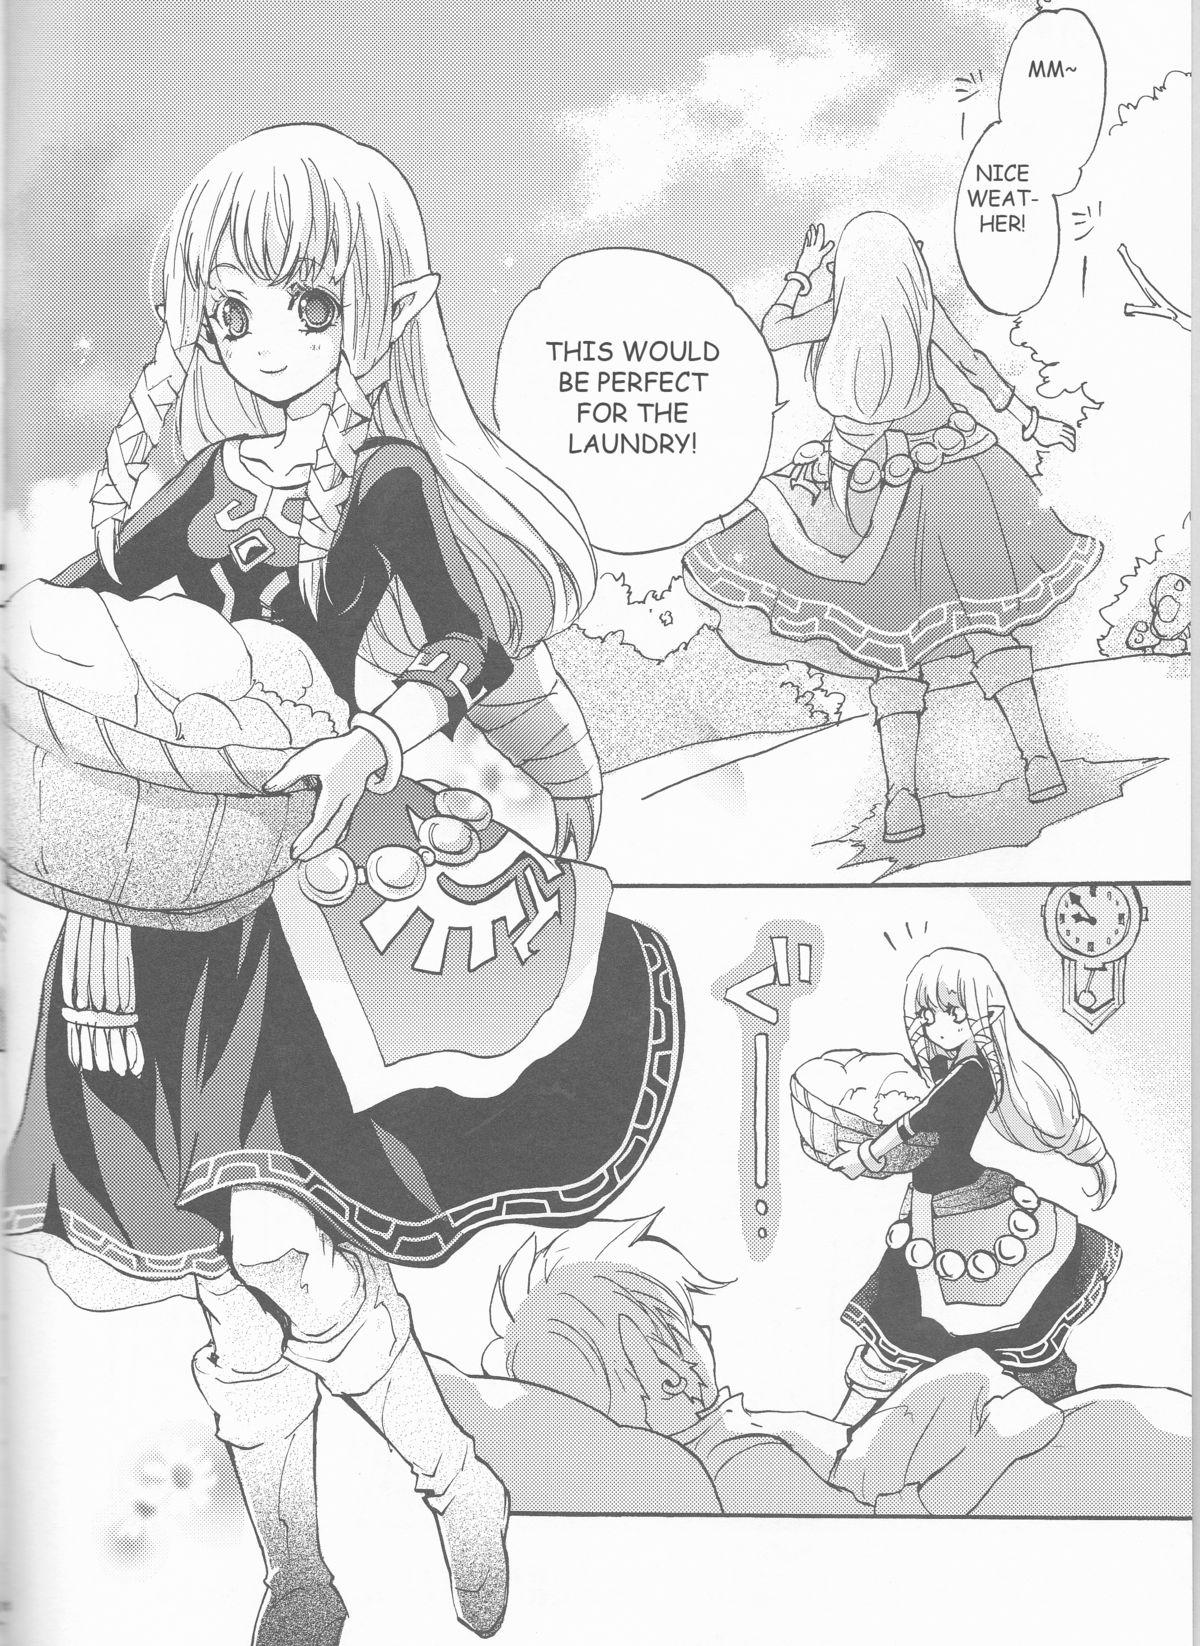 Chaturbate Hajimete no Natsu. - The legend of zelda Gemidos - Page 4